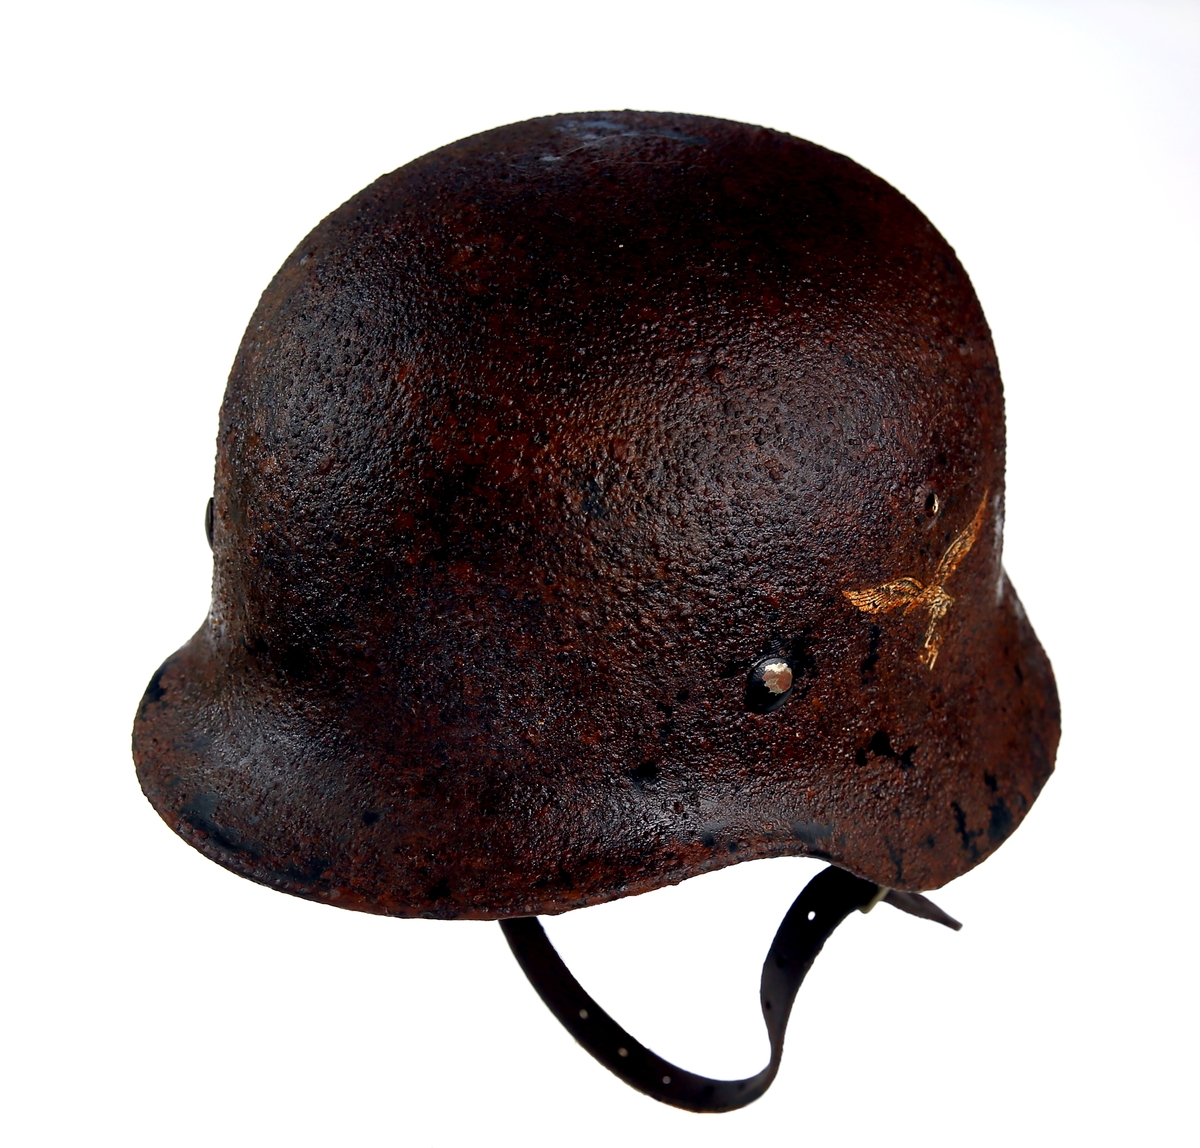 Tysk hjelm for Luftforsvaret m/40
Levert tilbake. Er ikke lengere i vår samling. Besluttet av inntakskomiteen